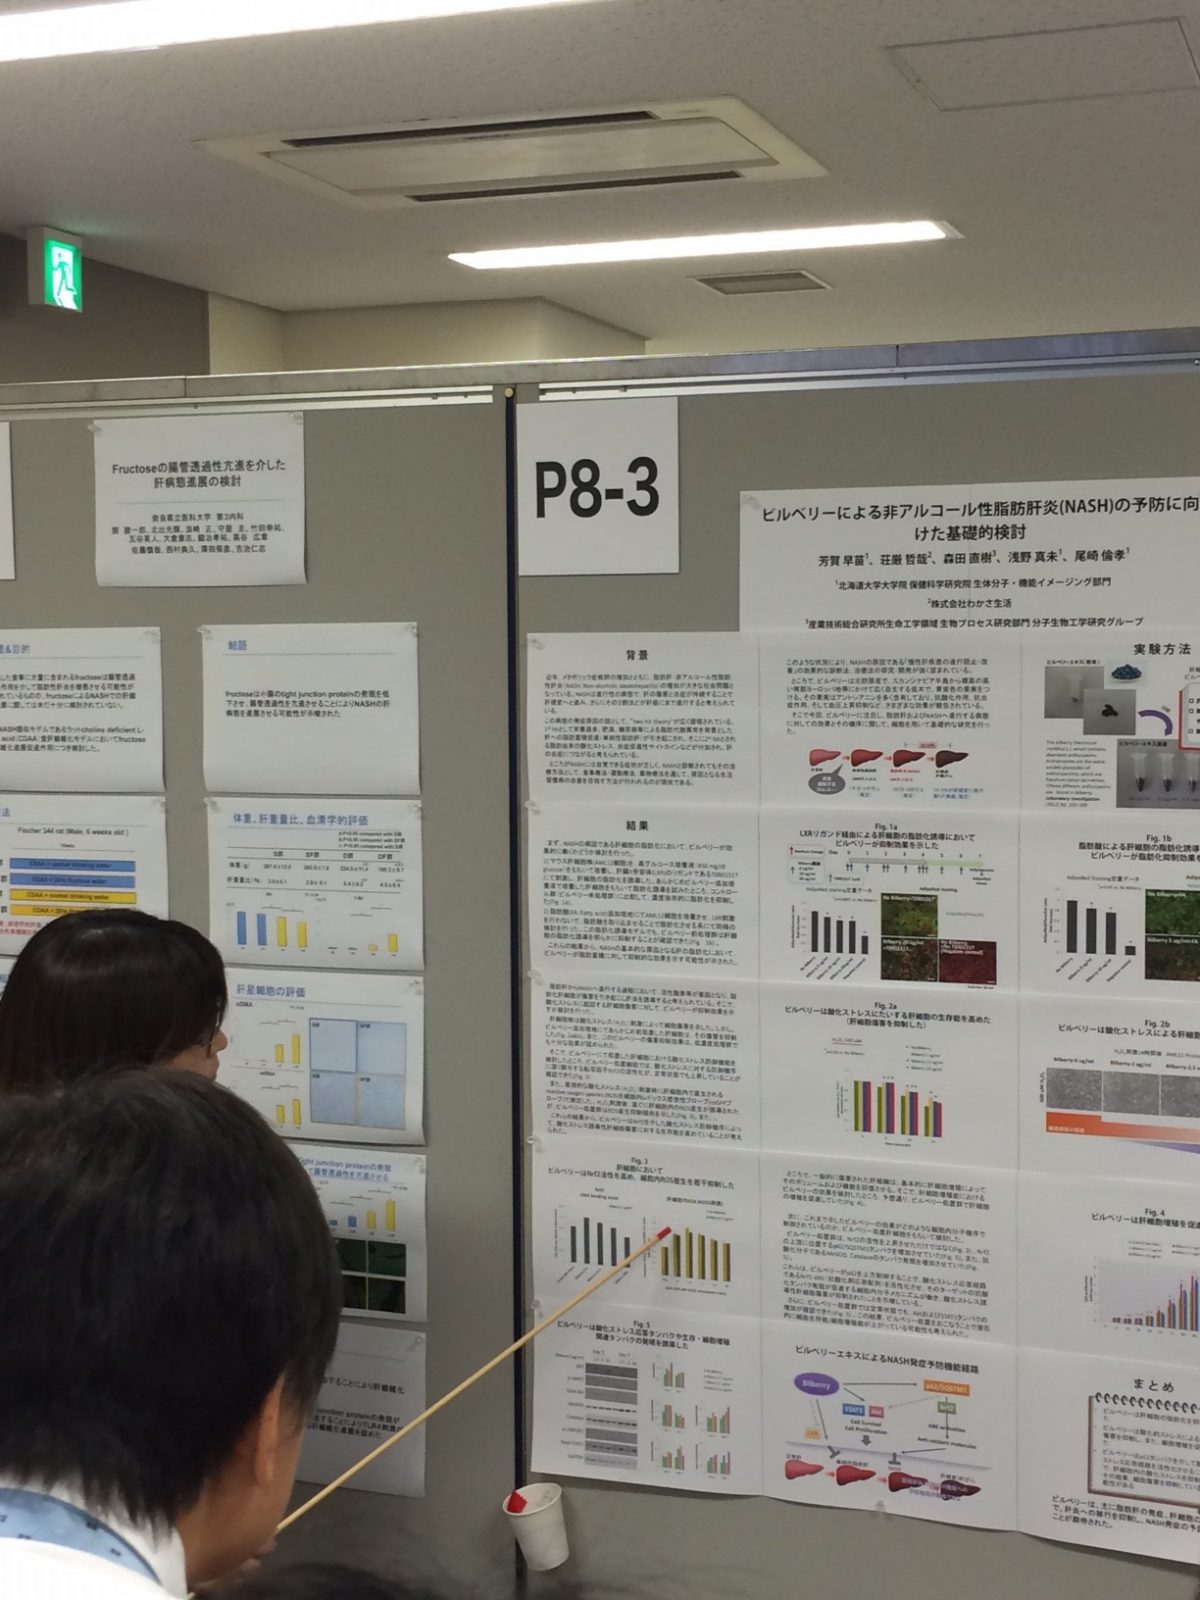 第23回肝細胞研究会（大阪）にて、博士研究員の芳賀早苗さんが発表しました(2016-7-8)。